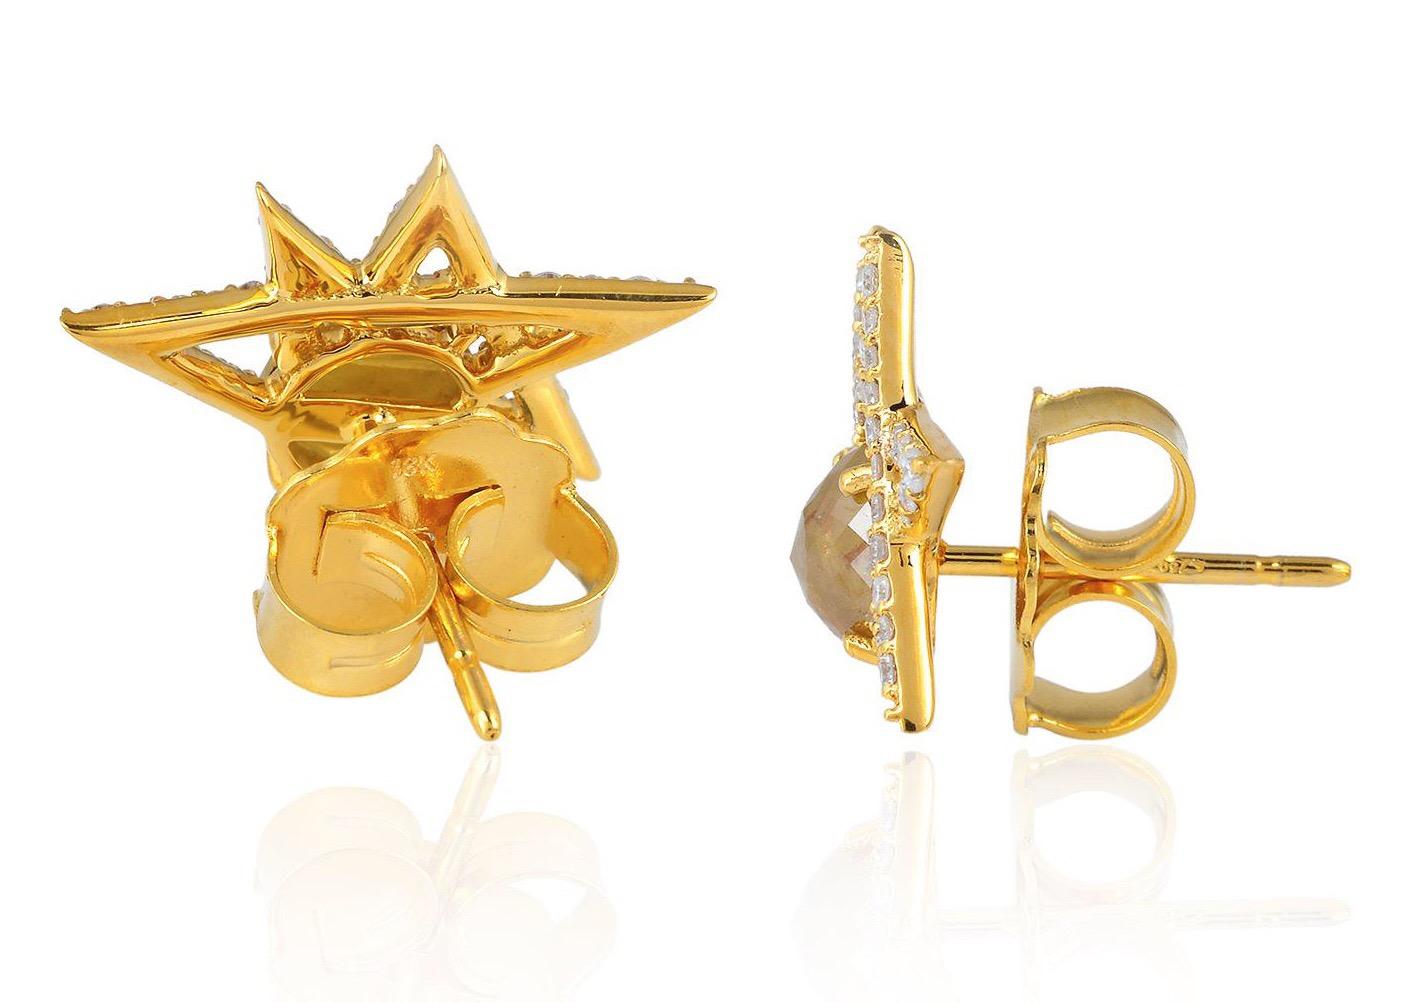 Diese wunderschönen Ohrstecker aus 18-karätigem Gold sind mit einem Fancy Slice-Diamanten und 1,94 Karat funkelnden Diamanten besetzt. 

FOLGEN  MEGHNA JEWELS Storefront, um die neueste Kollektion und exklusive Stücke zu sehen.  Meghna Jewels ist